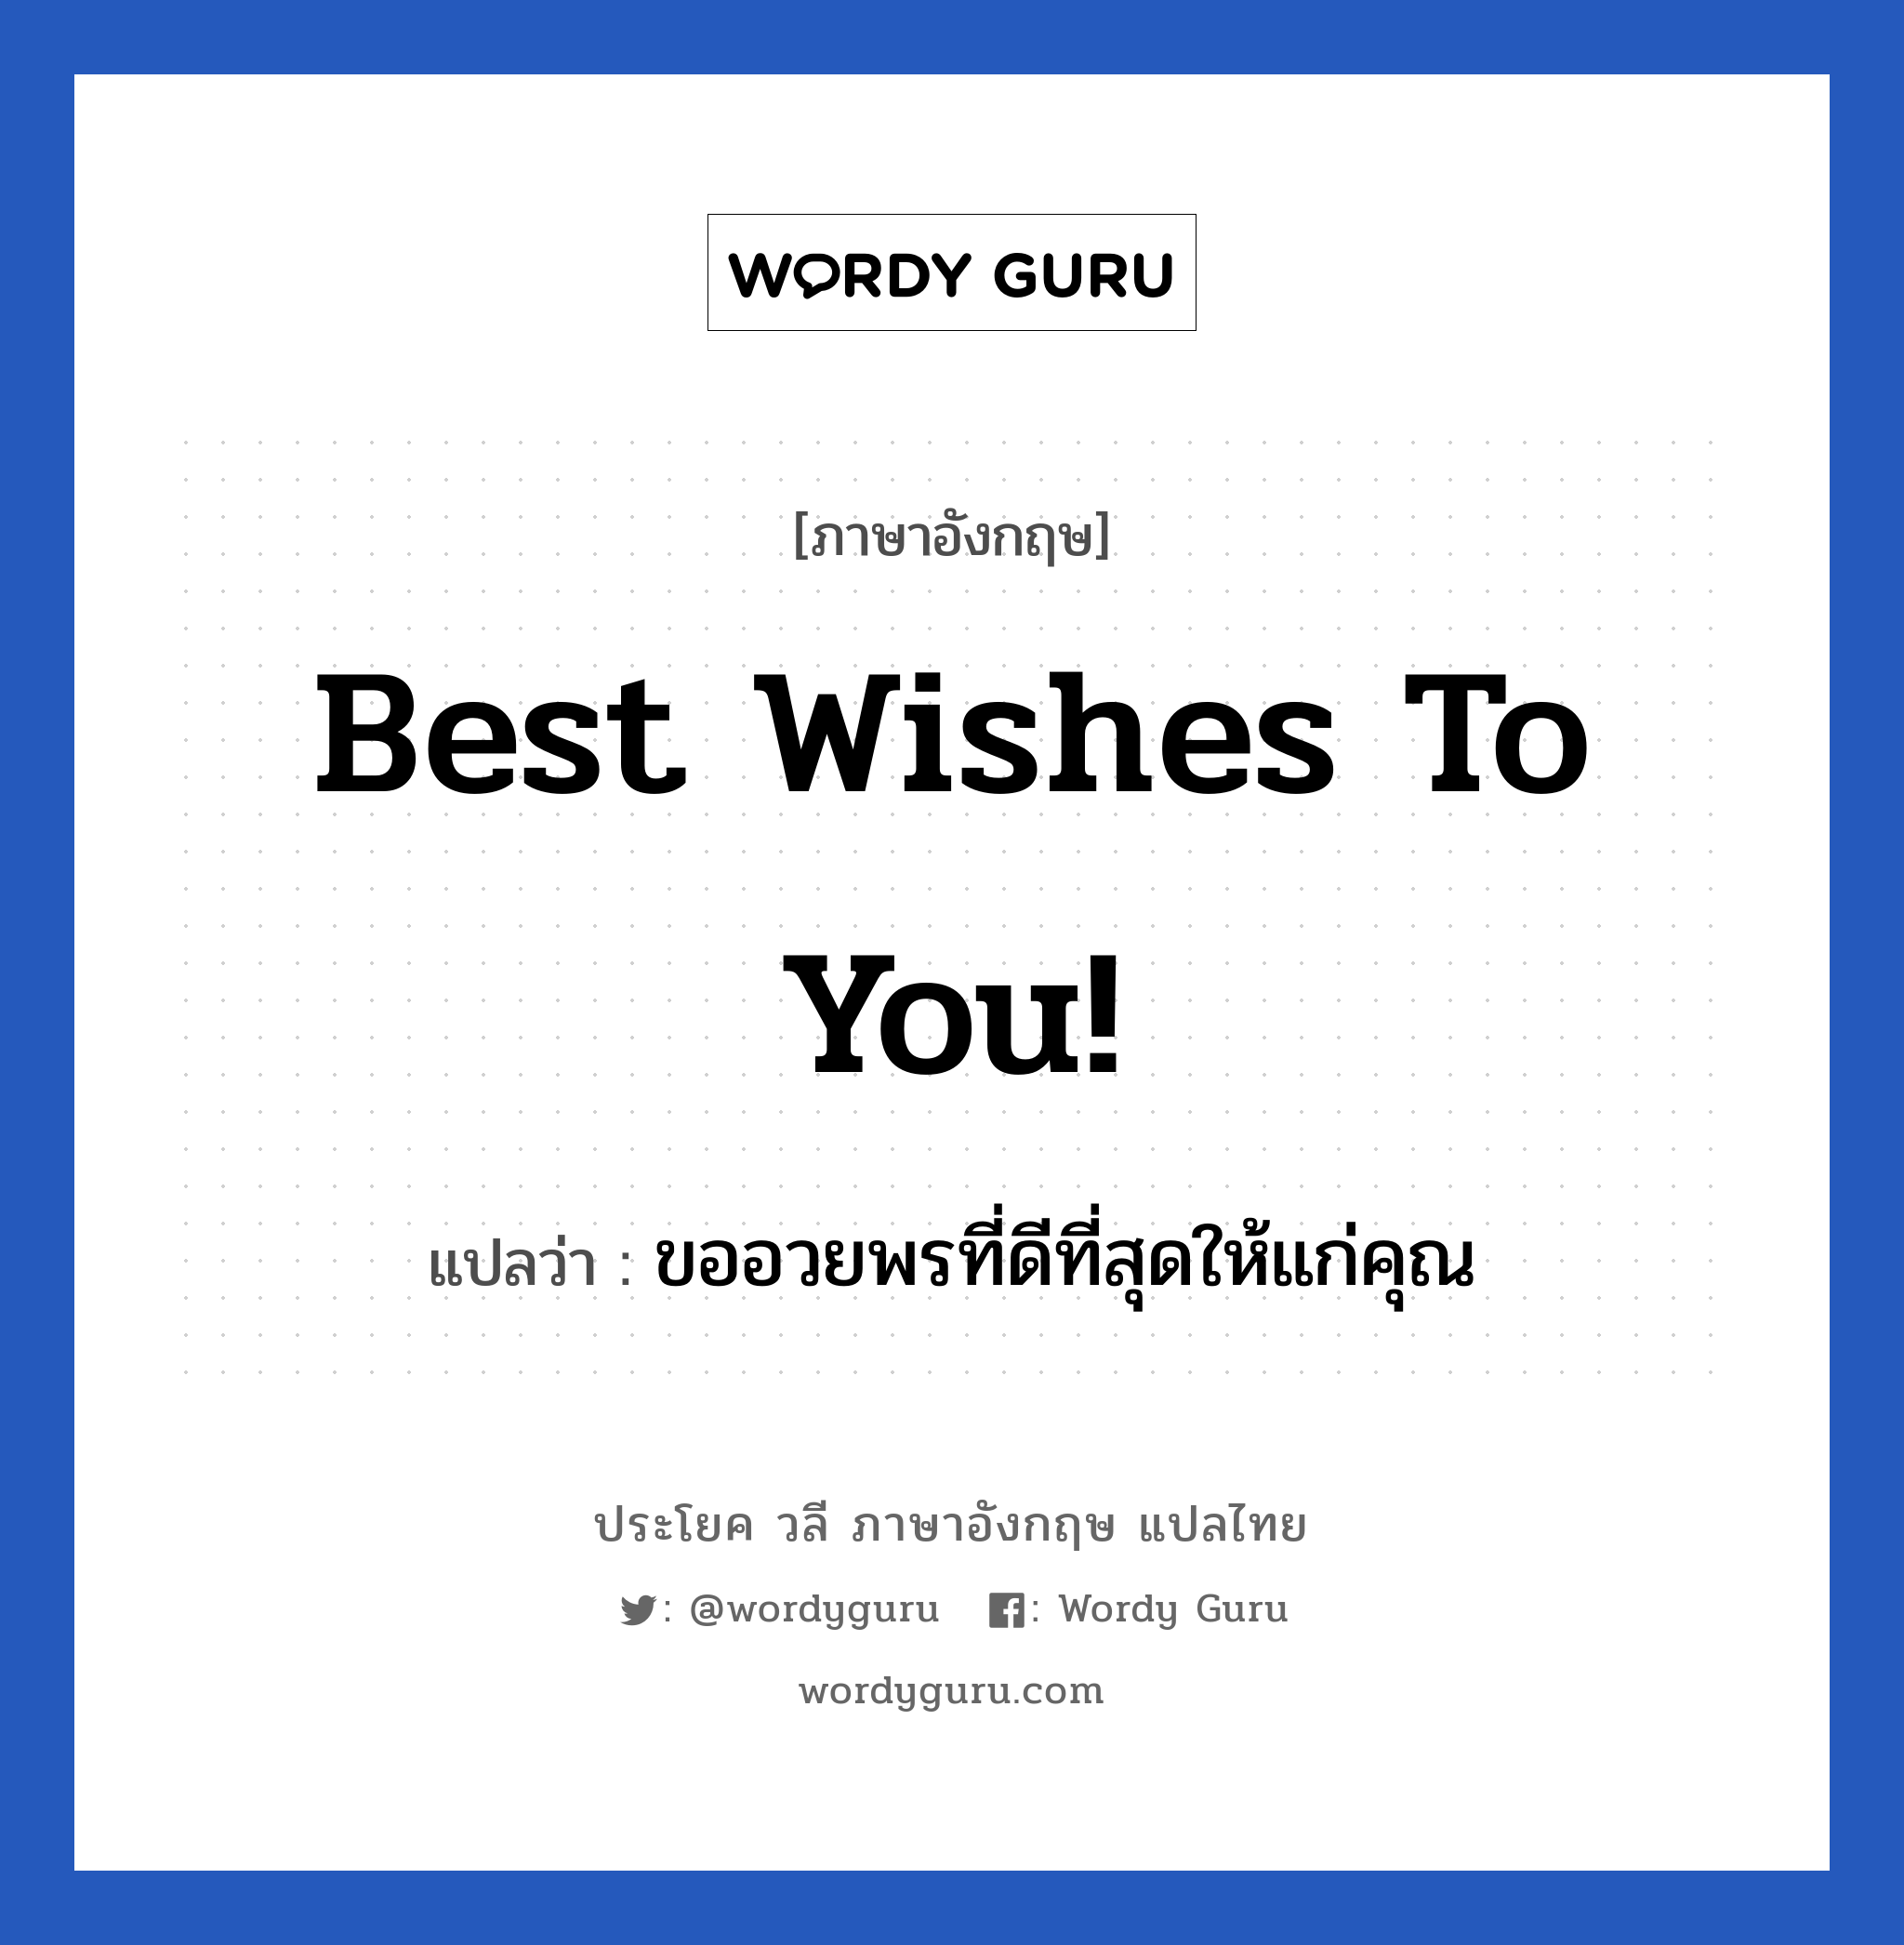 ขออวยพรที่ดีที่สุดให้แก่คุณ ภาษาอังกฤษ?, วลีภาษาอังกฤษ ขออวยพรที่ดีที่สุดให้แก่คุณ แปลว่า Best wishes to you! หมวด อวยพร